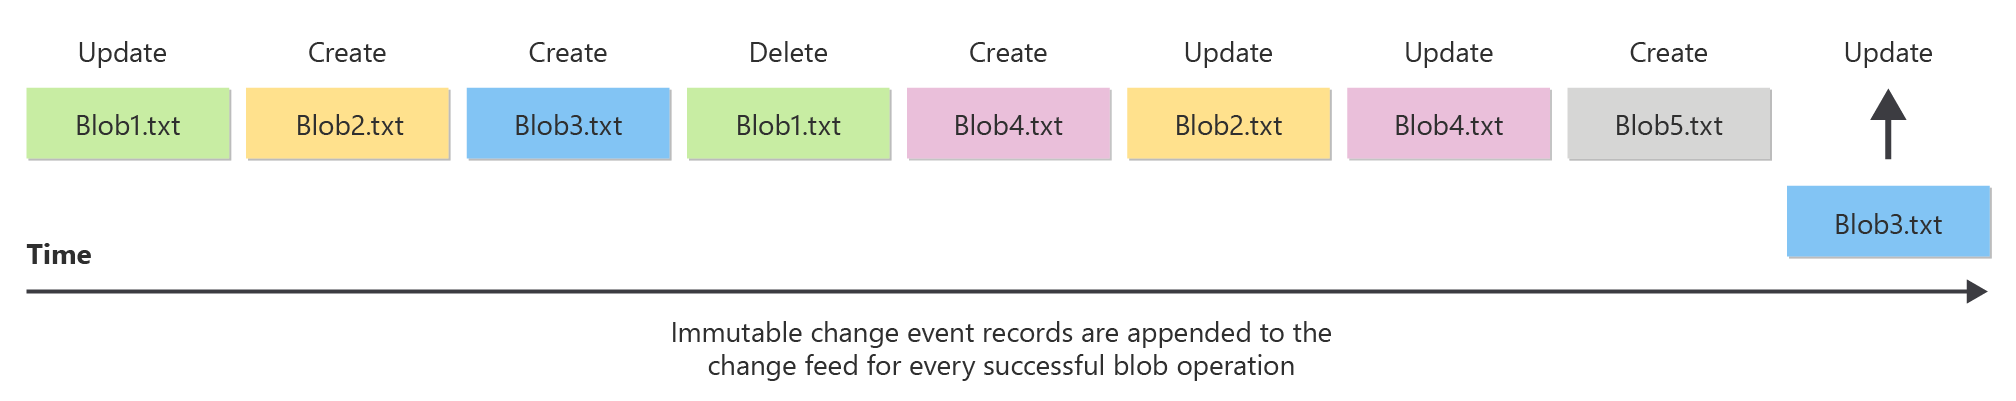 图中显示更改源如何提供 Blob 更改的有序日志